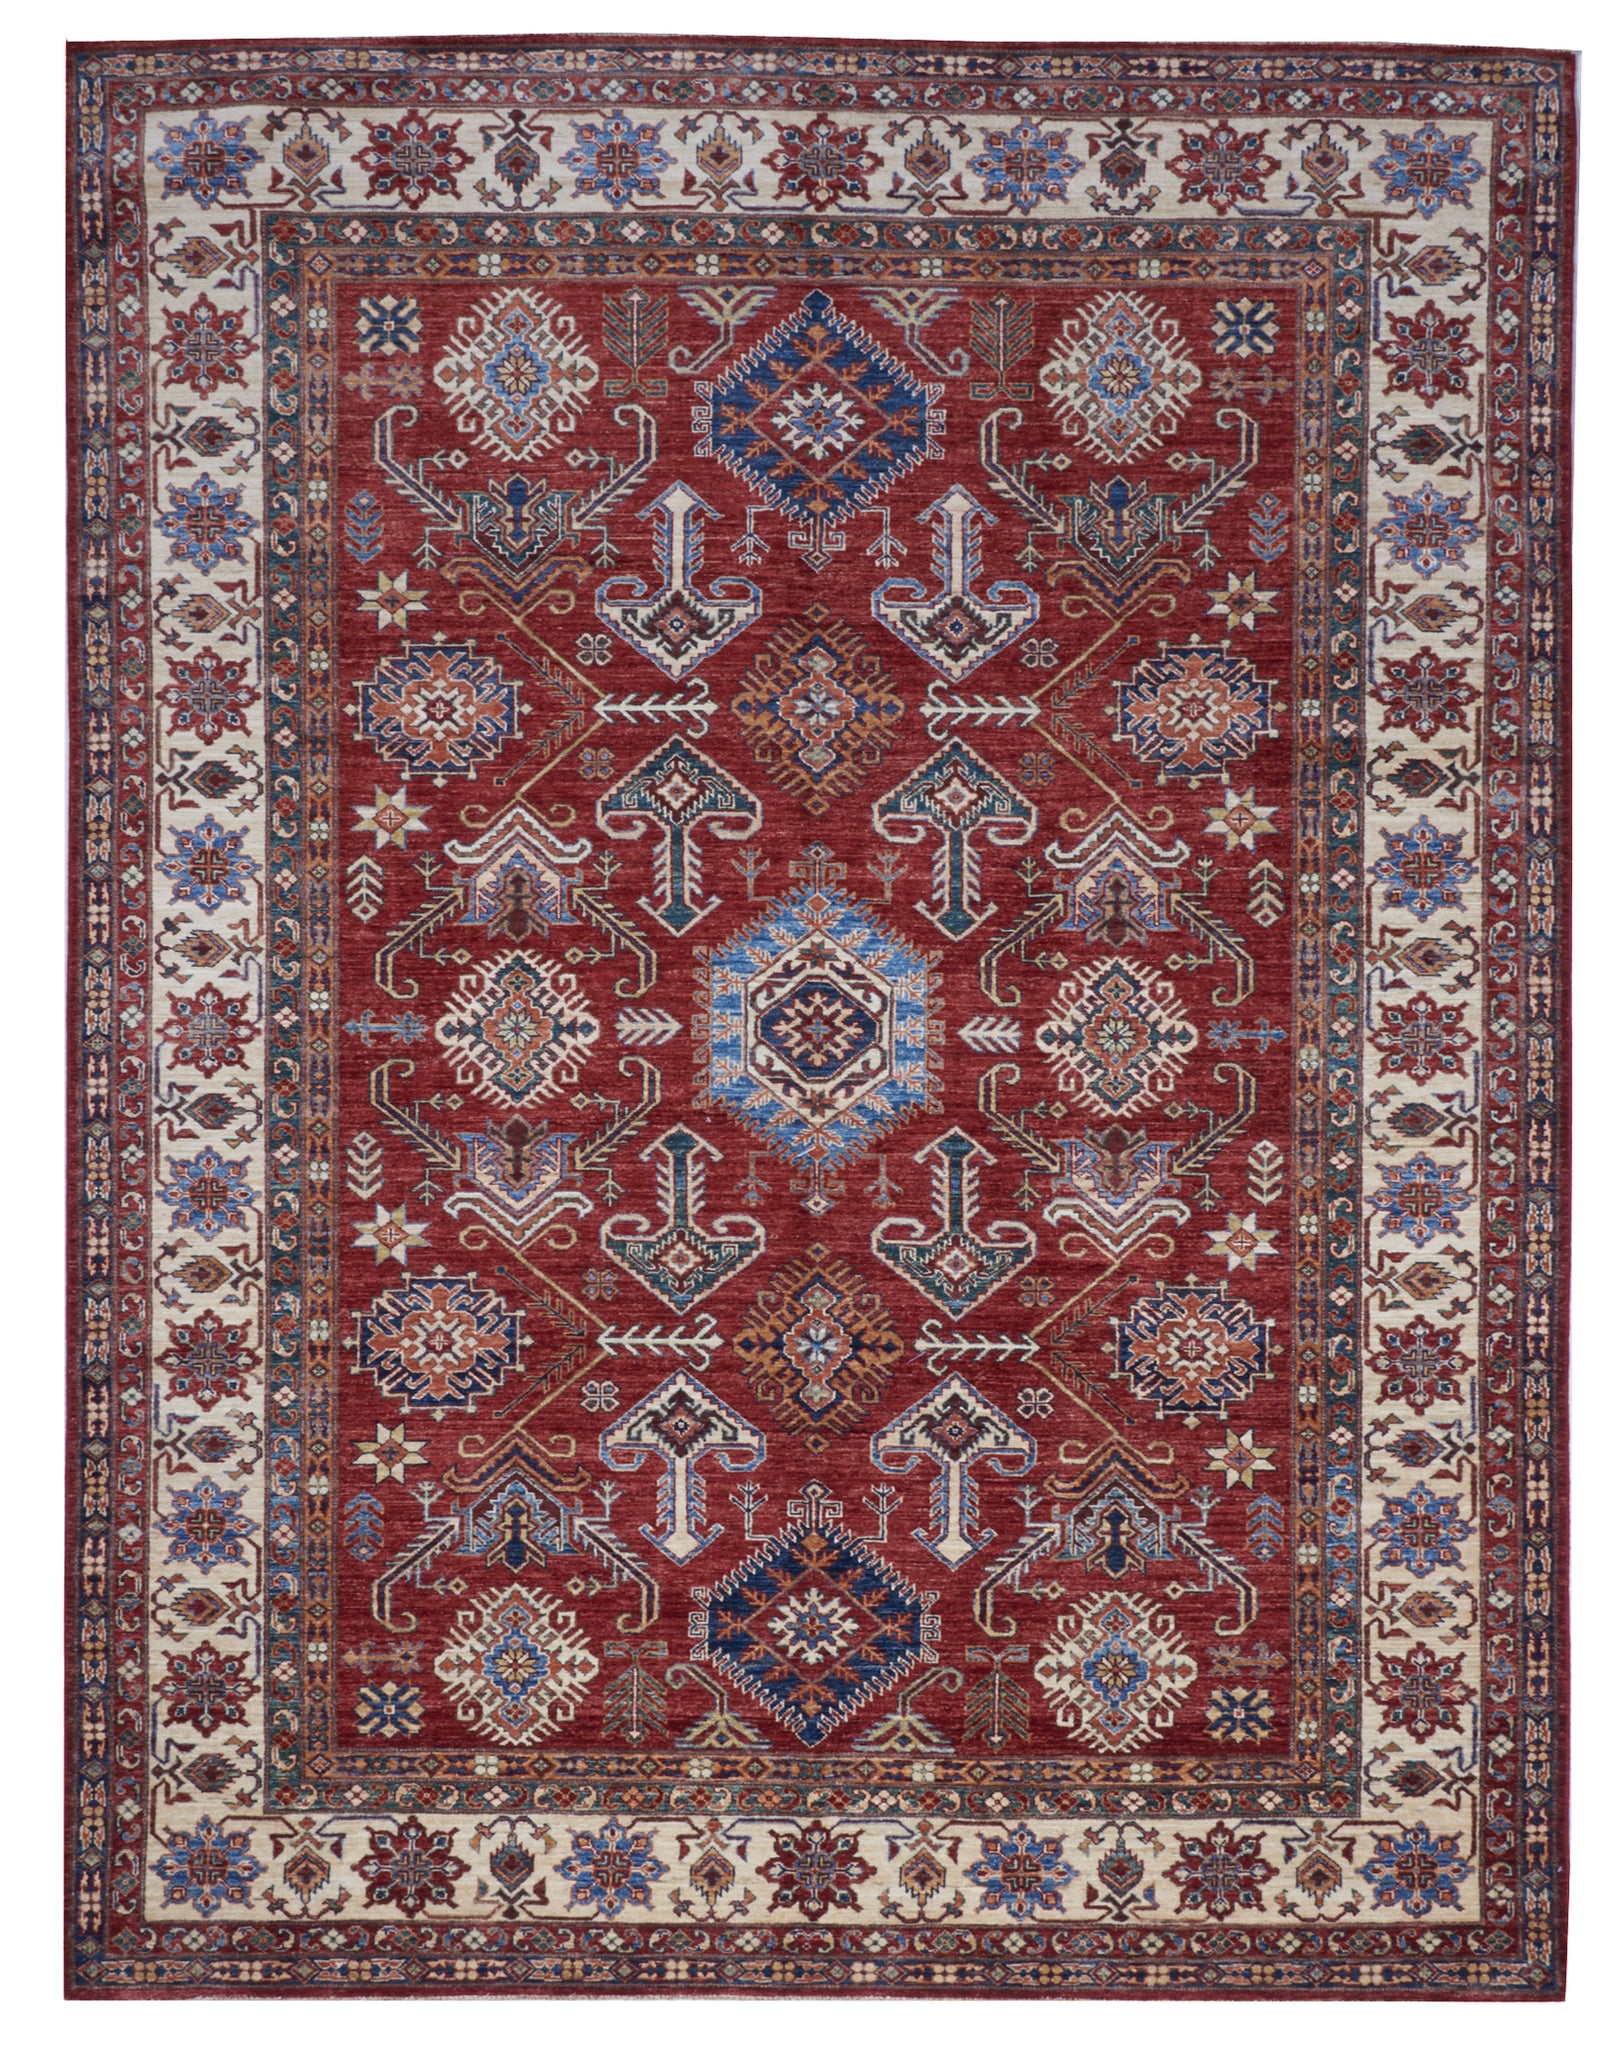 Kazak Handmade Red Multicolor Wool Rug 8' x 10'9 - IGotYourRug